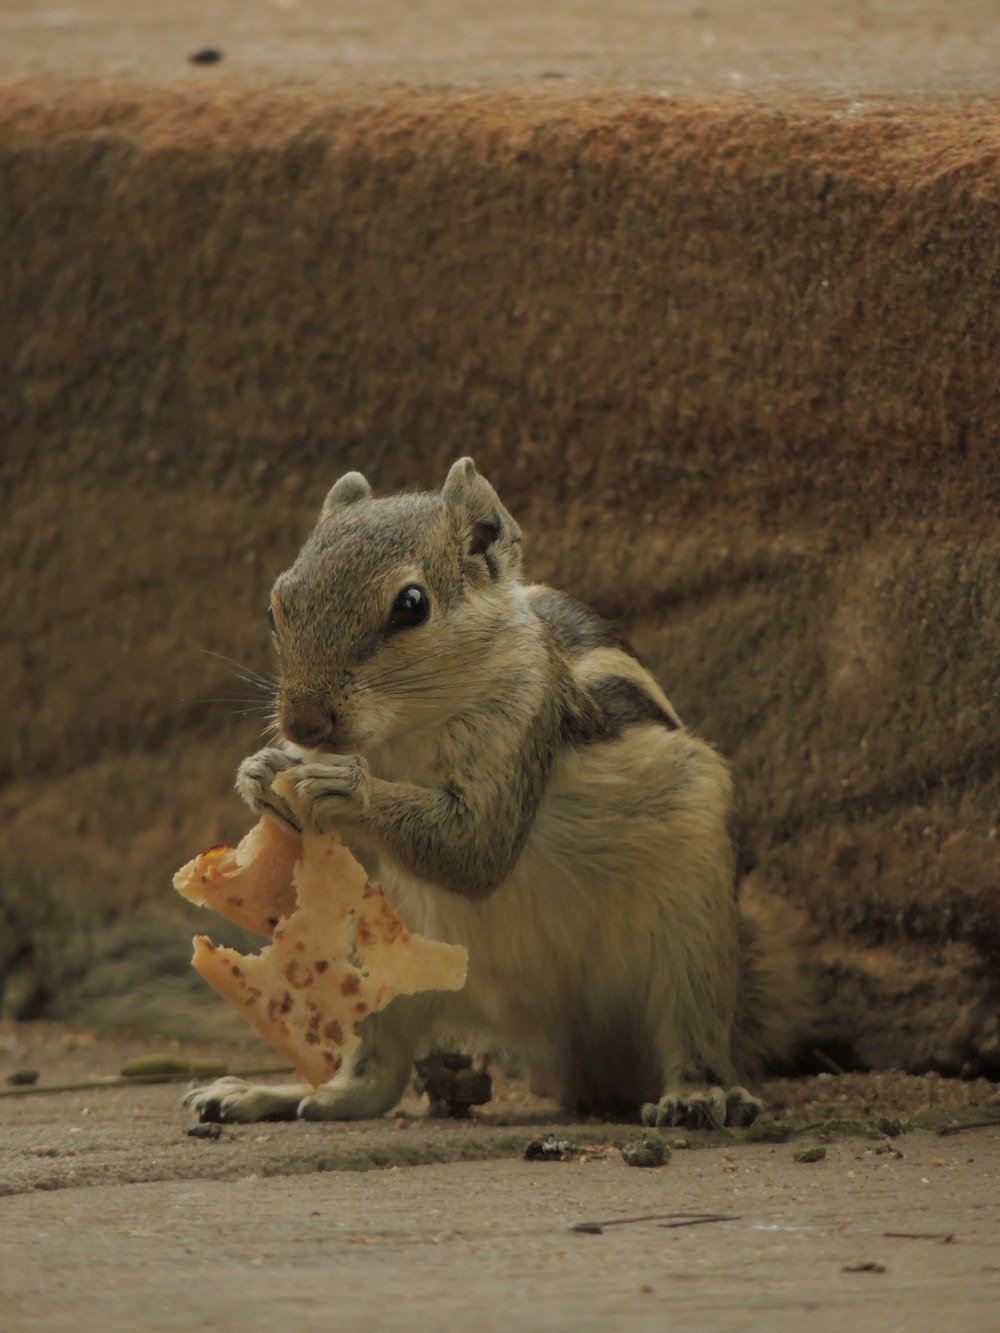 Una ardilla sostiene un pedazo de comida